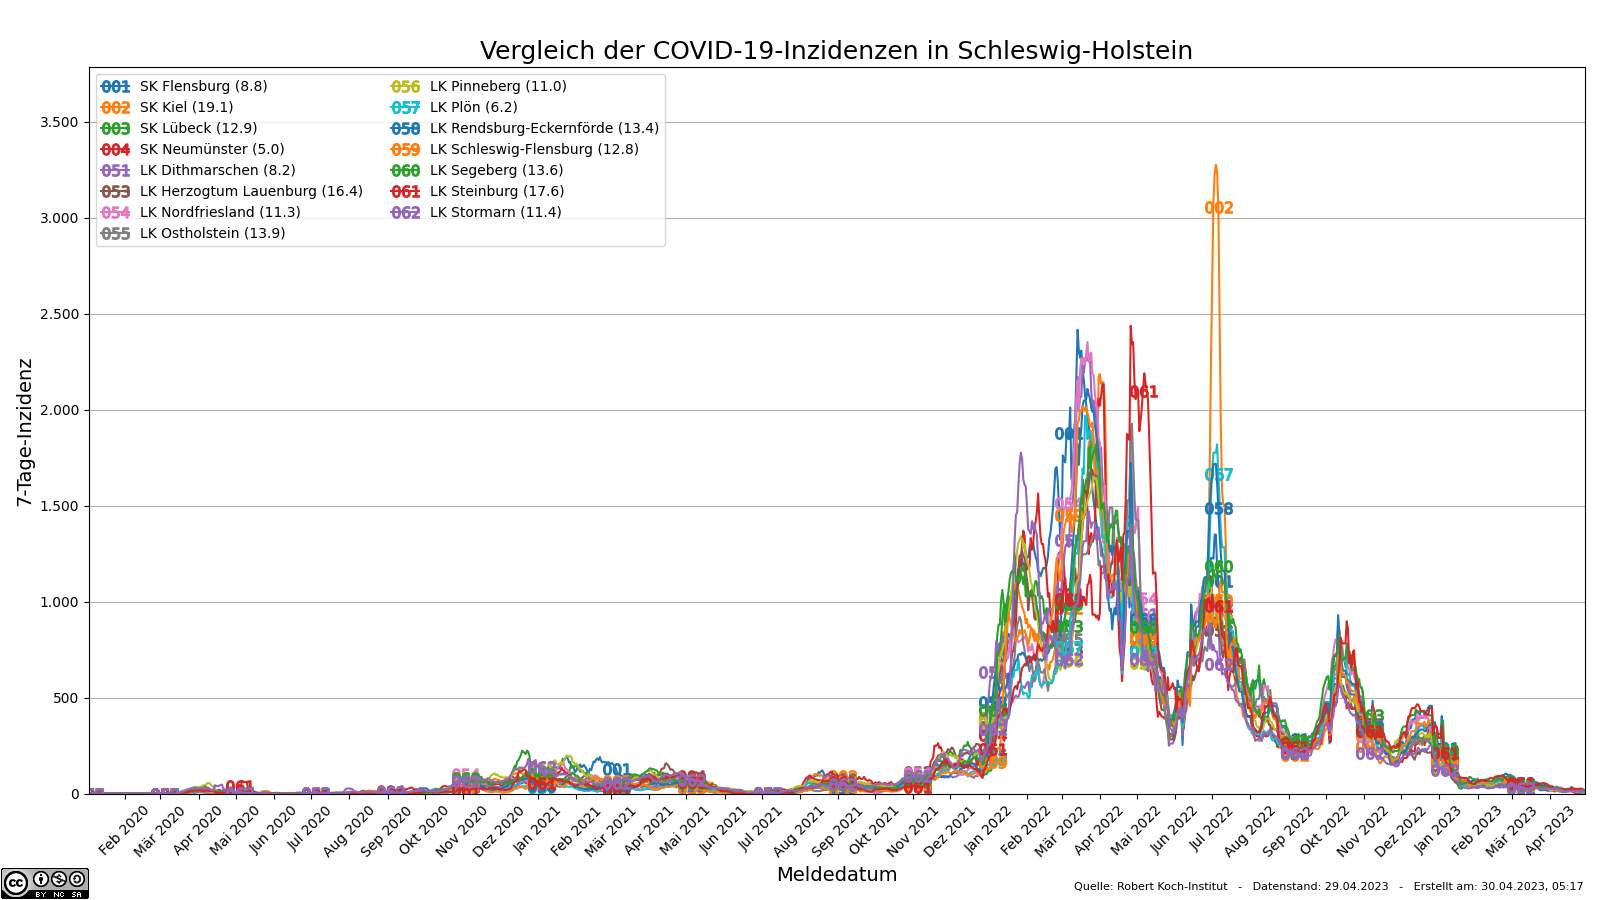 Vergleich der SARS-CoV-2-7-Tage-Inzidenzen in Schleswig-Holstein nach Kreisen / kreisfreien Städten.